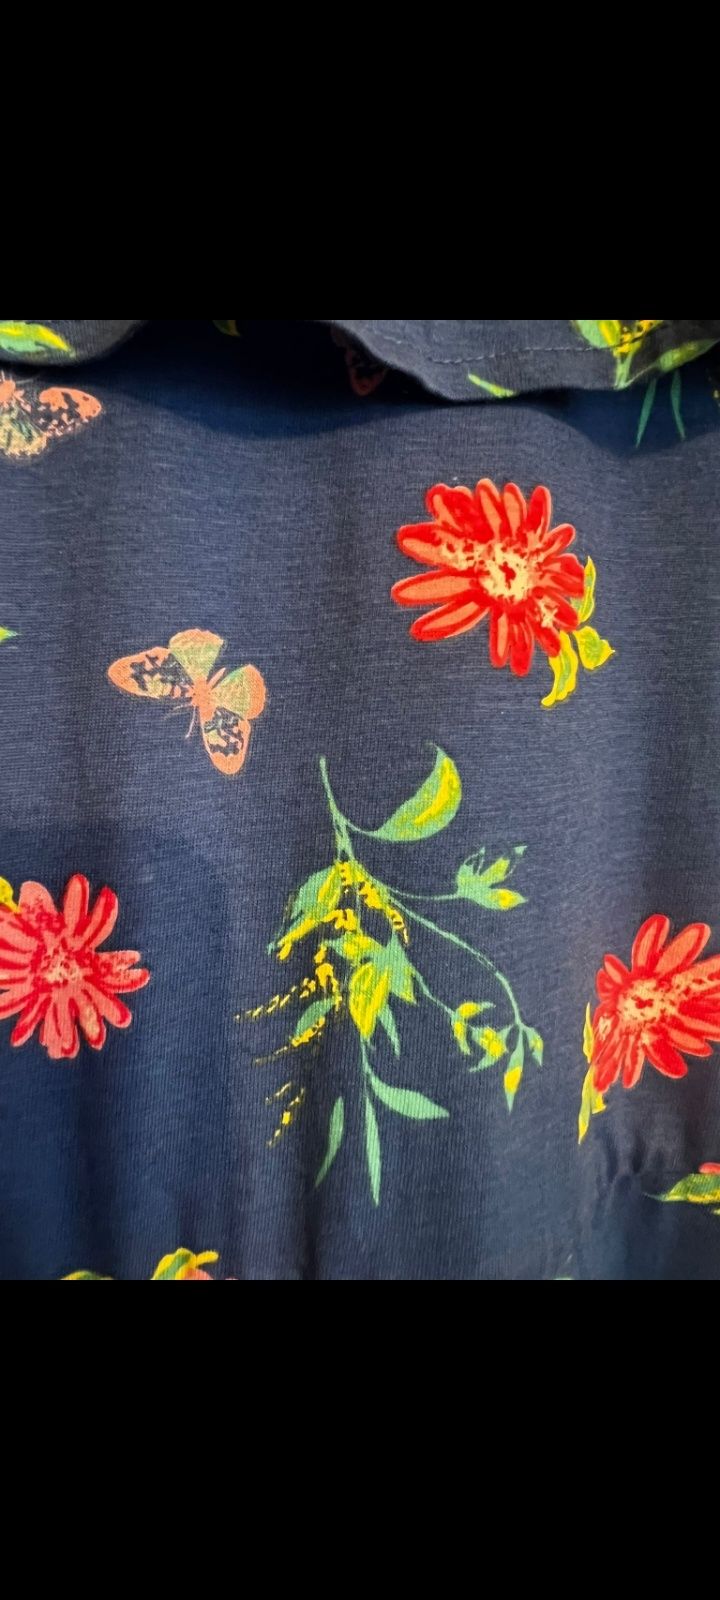 Granatowa sukienka w kwiaty bpc